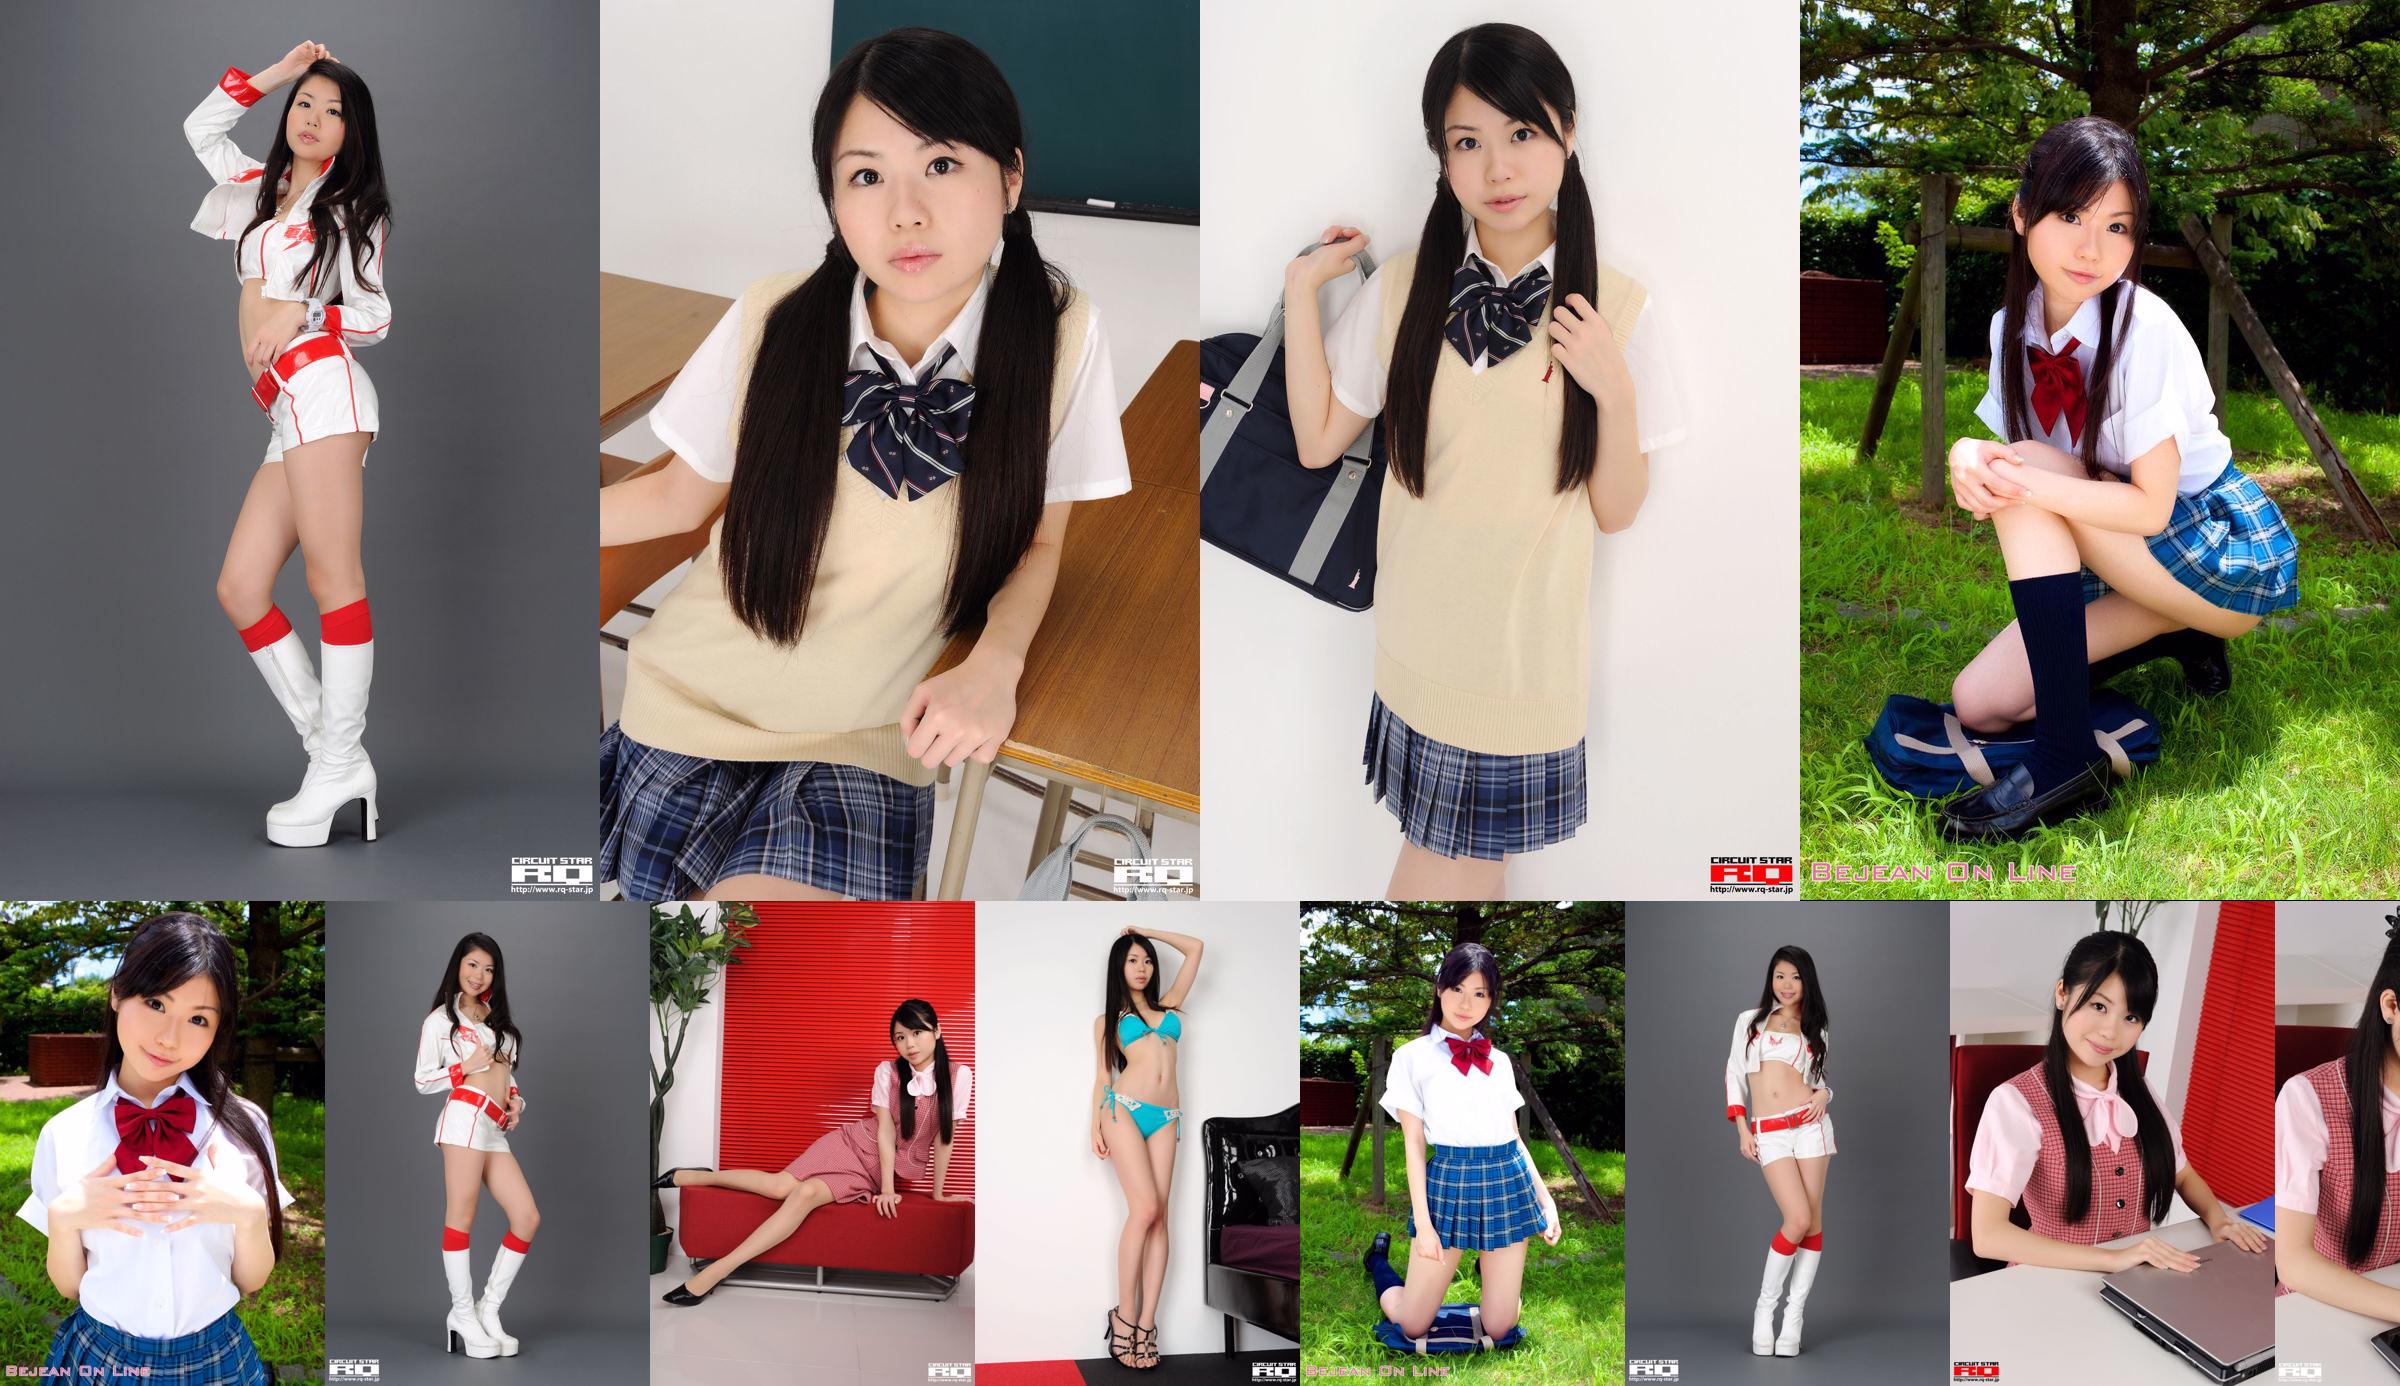 [RQ-STAR] NO.00436 Série de uniforme escolar Ikehara Toumi School Girl No.ee0228 Página 17